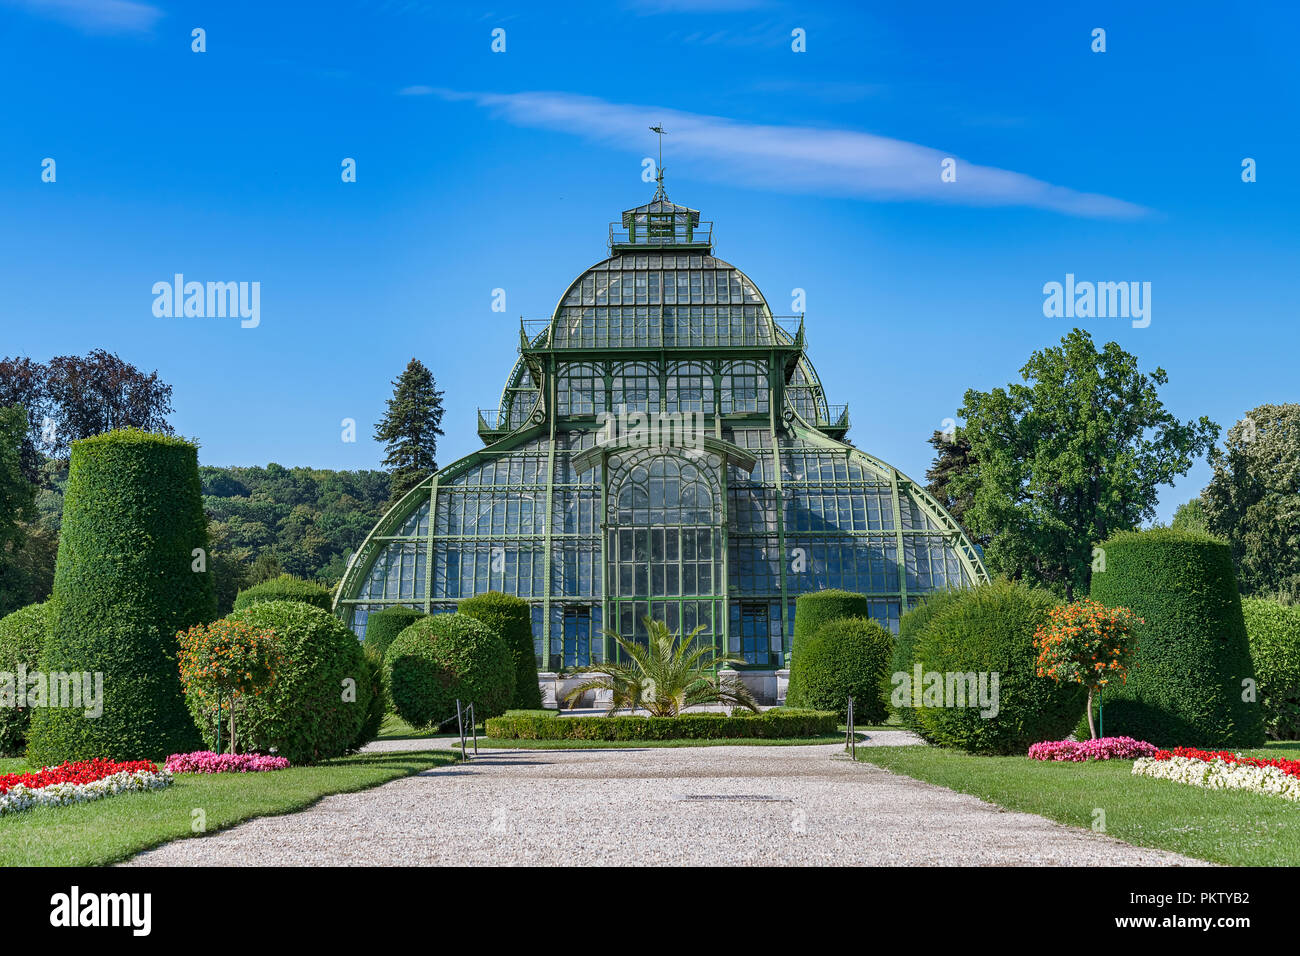 La Casa de las palmeras, jardines del palacio de Schönbrunn, Viena, Austria Foto de stock